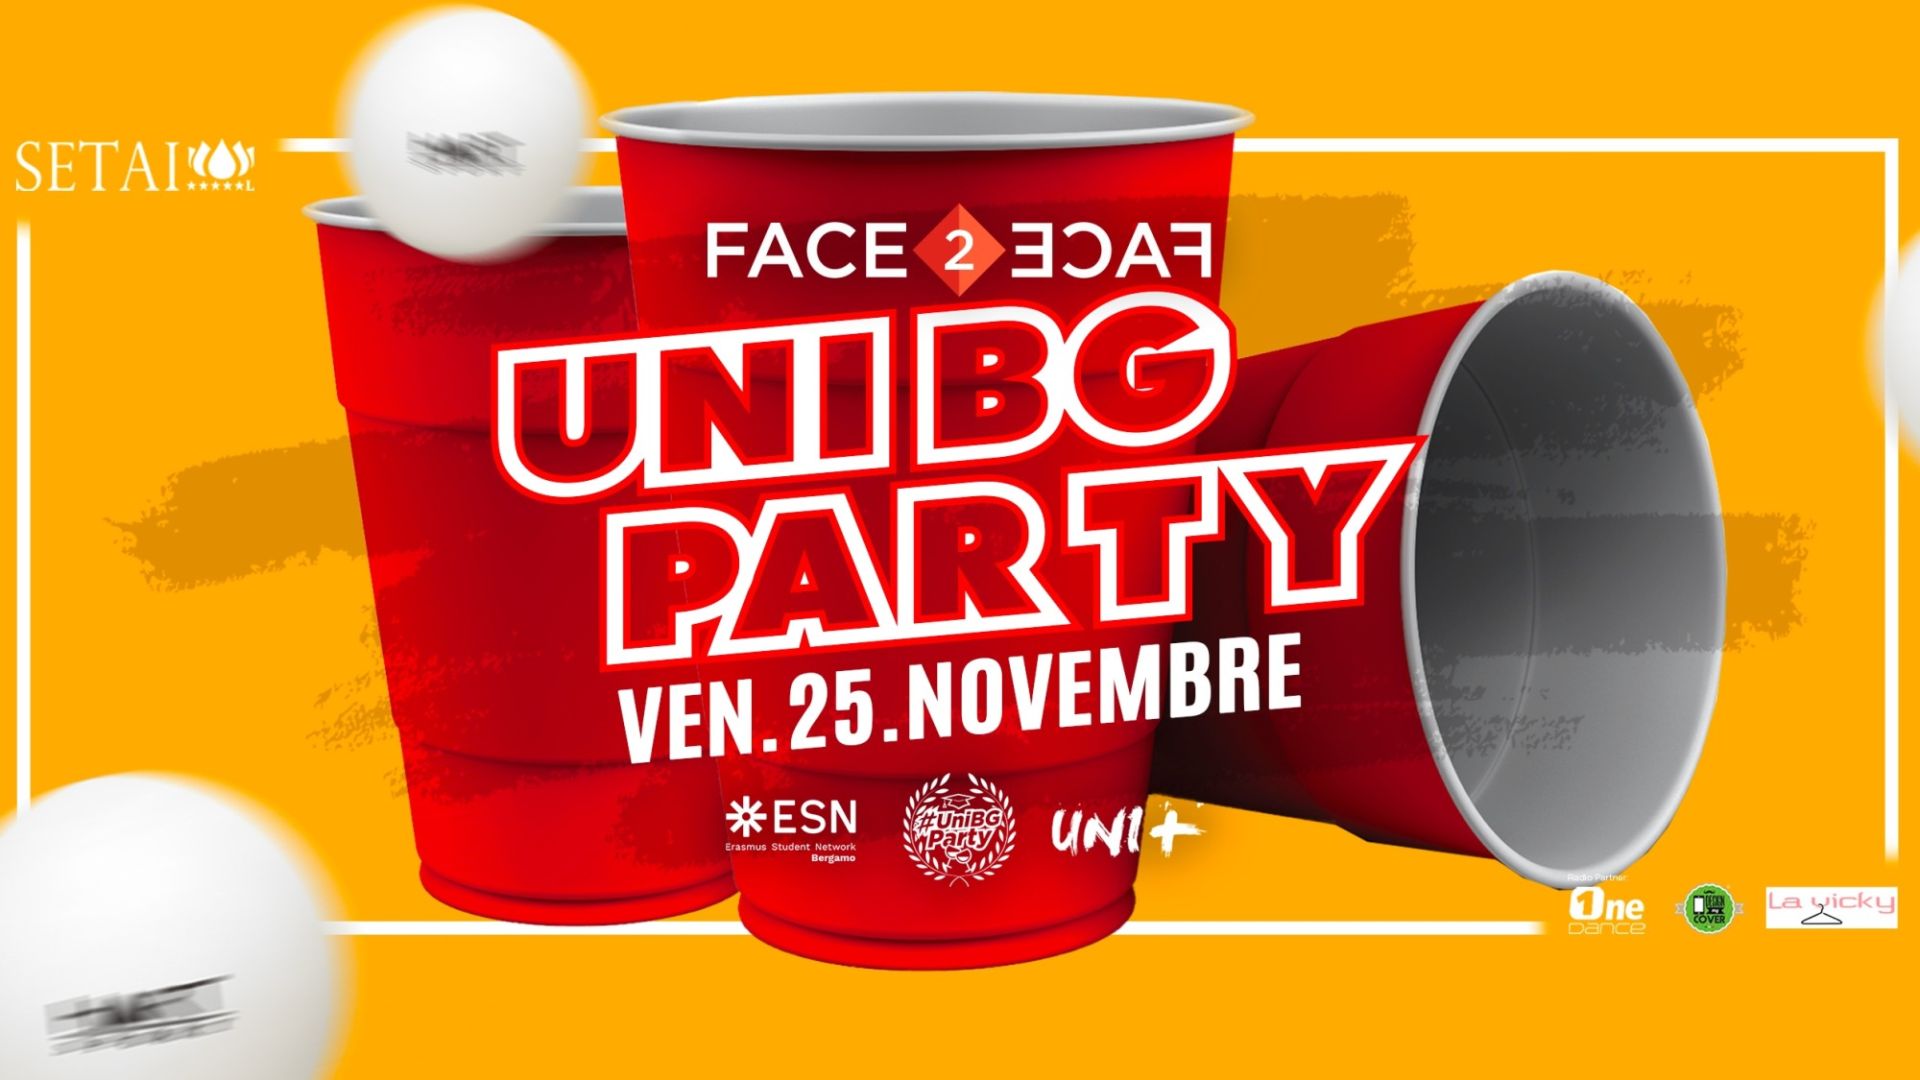 Face2Face pres. #UNIBG PARTY